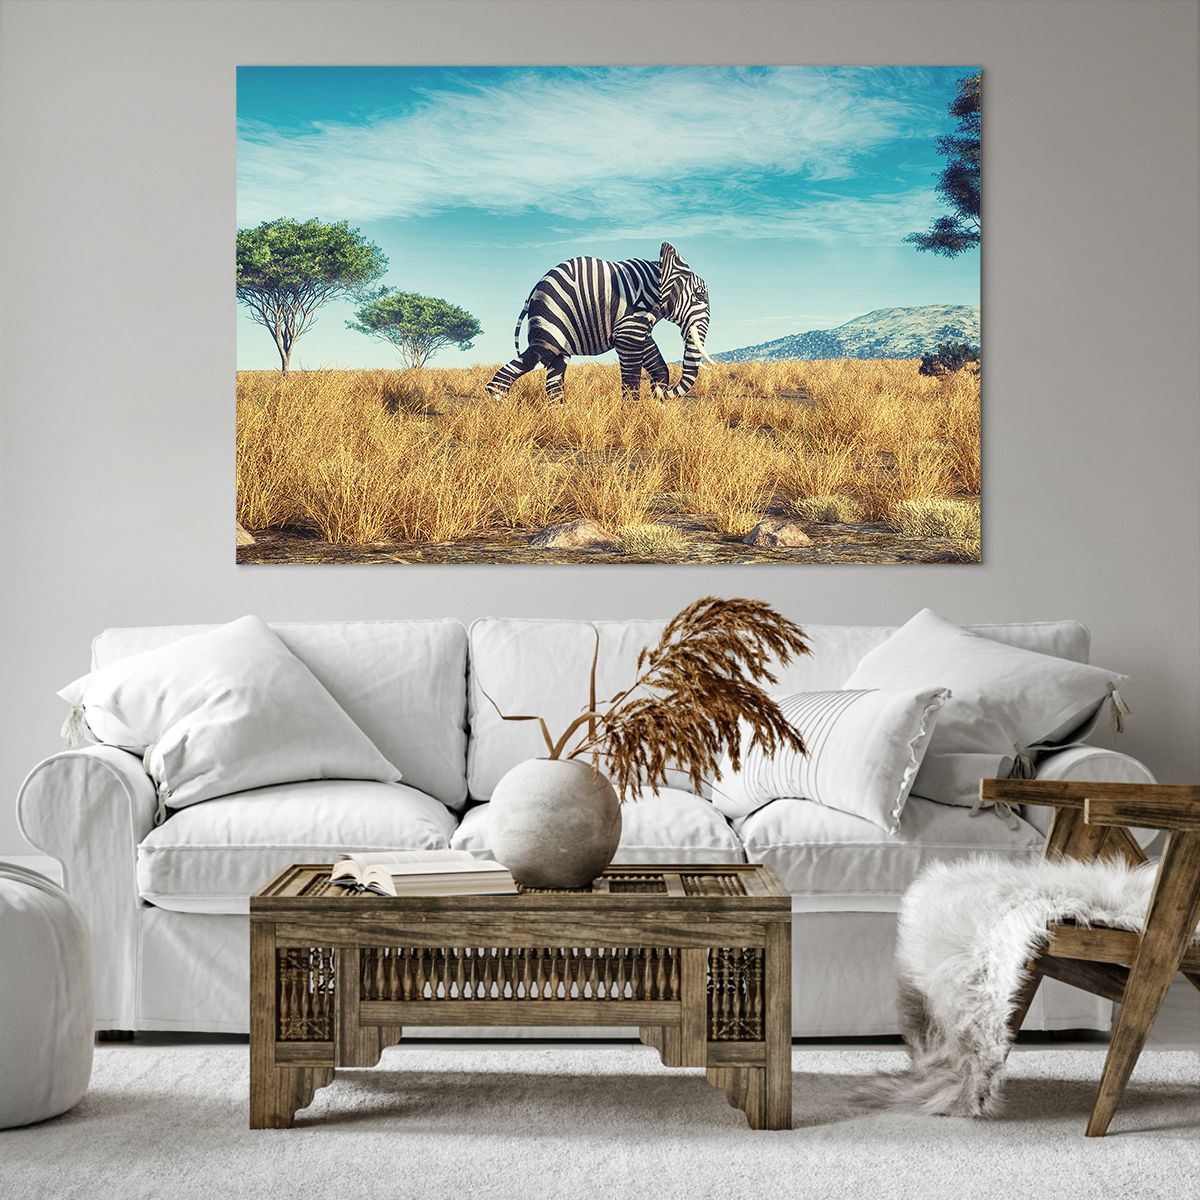 Bild auf Leinwand Abstraktion, Bild auf Leinwand Elefant, Bild auf Leinwand Rippen, Bild auf Leinwand Landschaft, Bild auf Leinwand Afrika